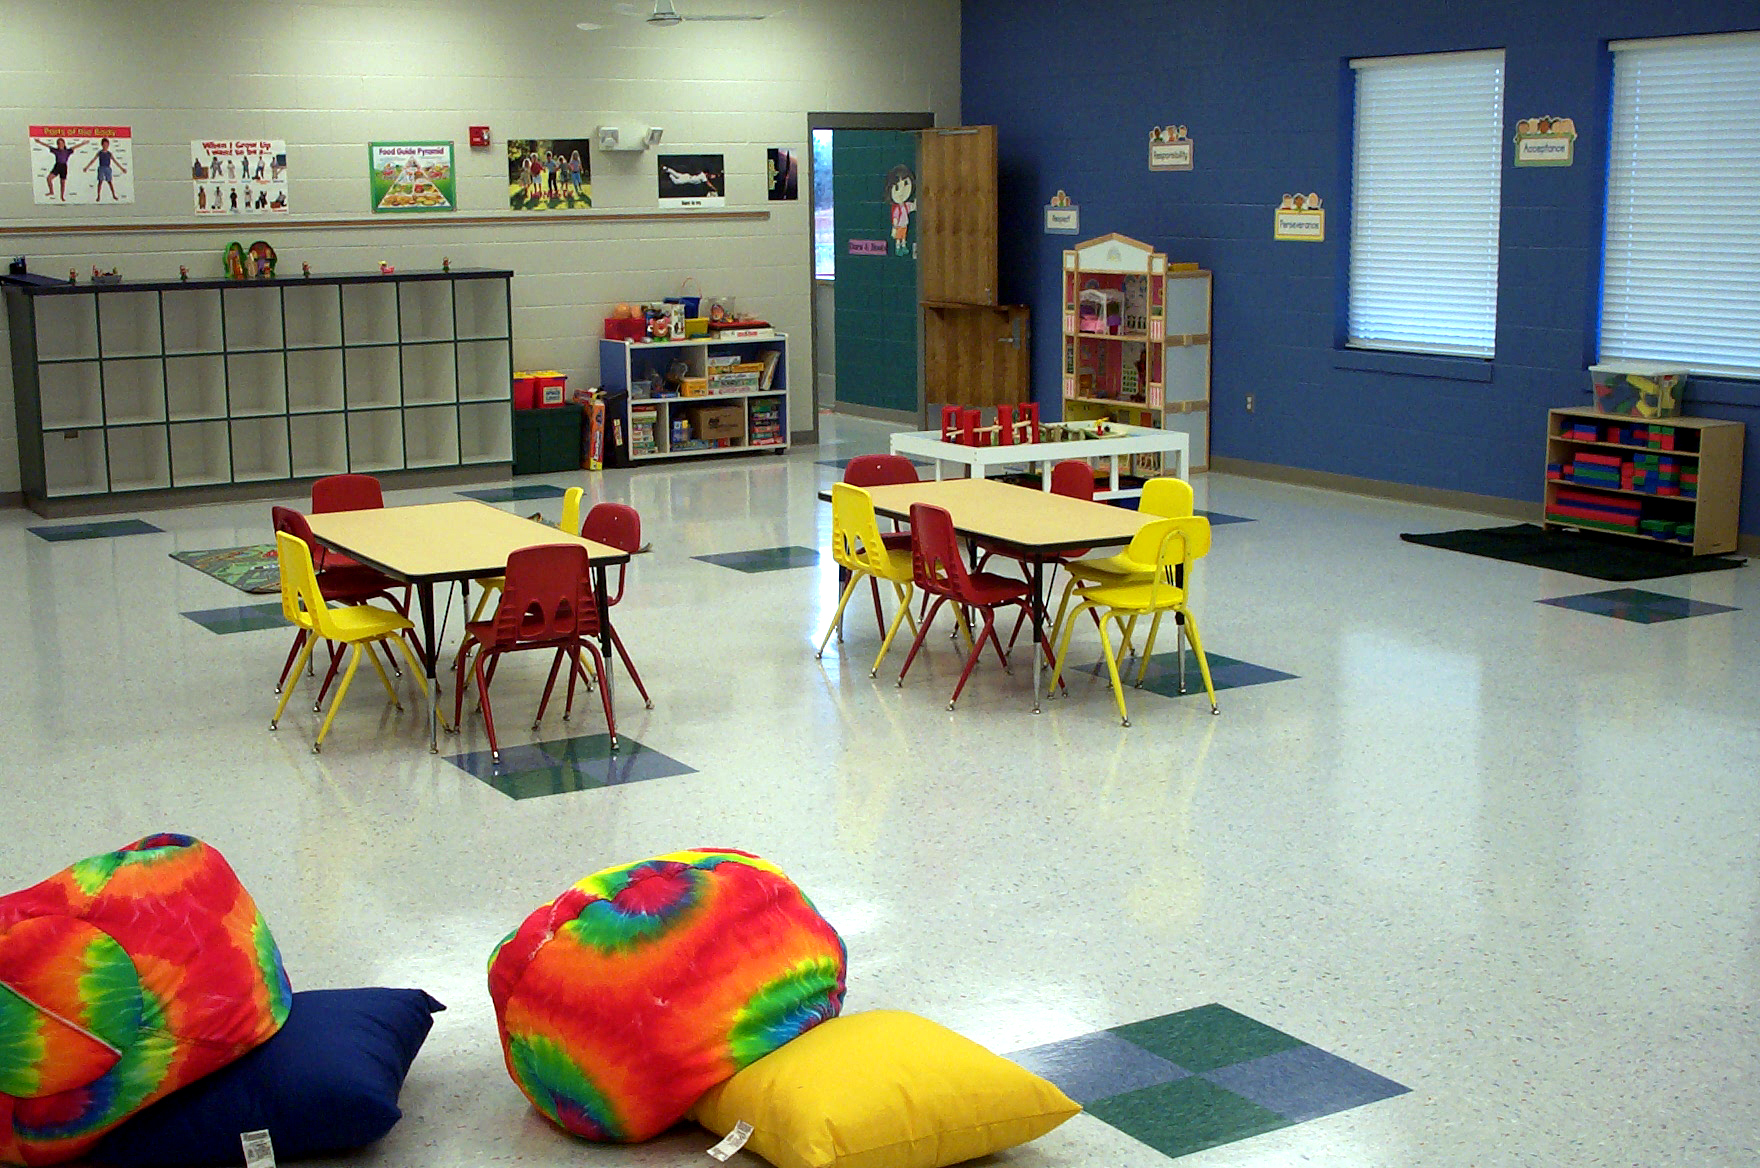 Activities in Kidz Connection childcare room.